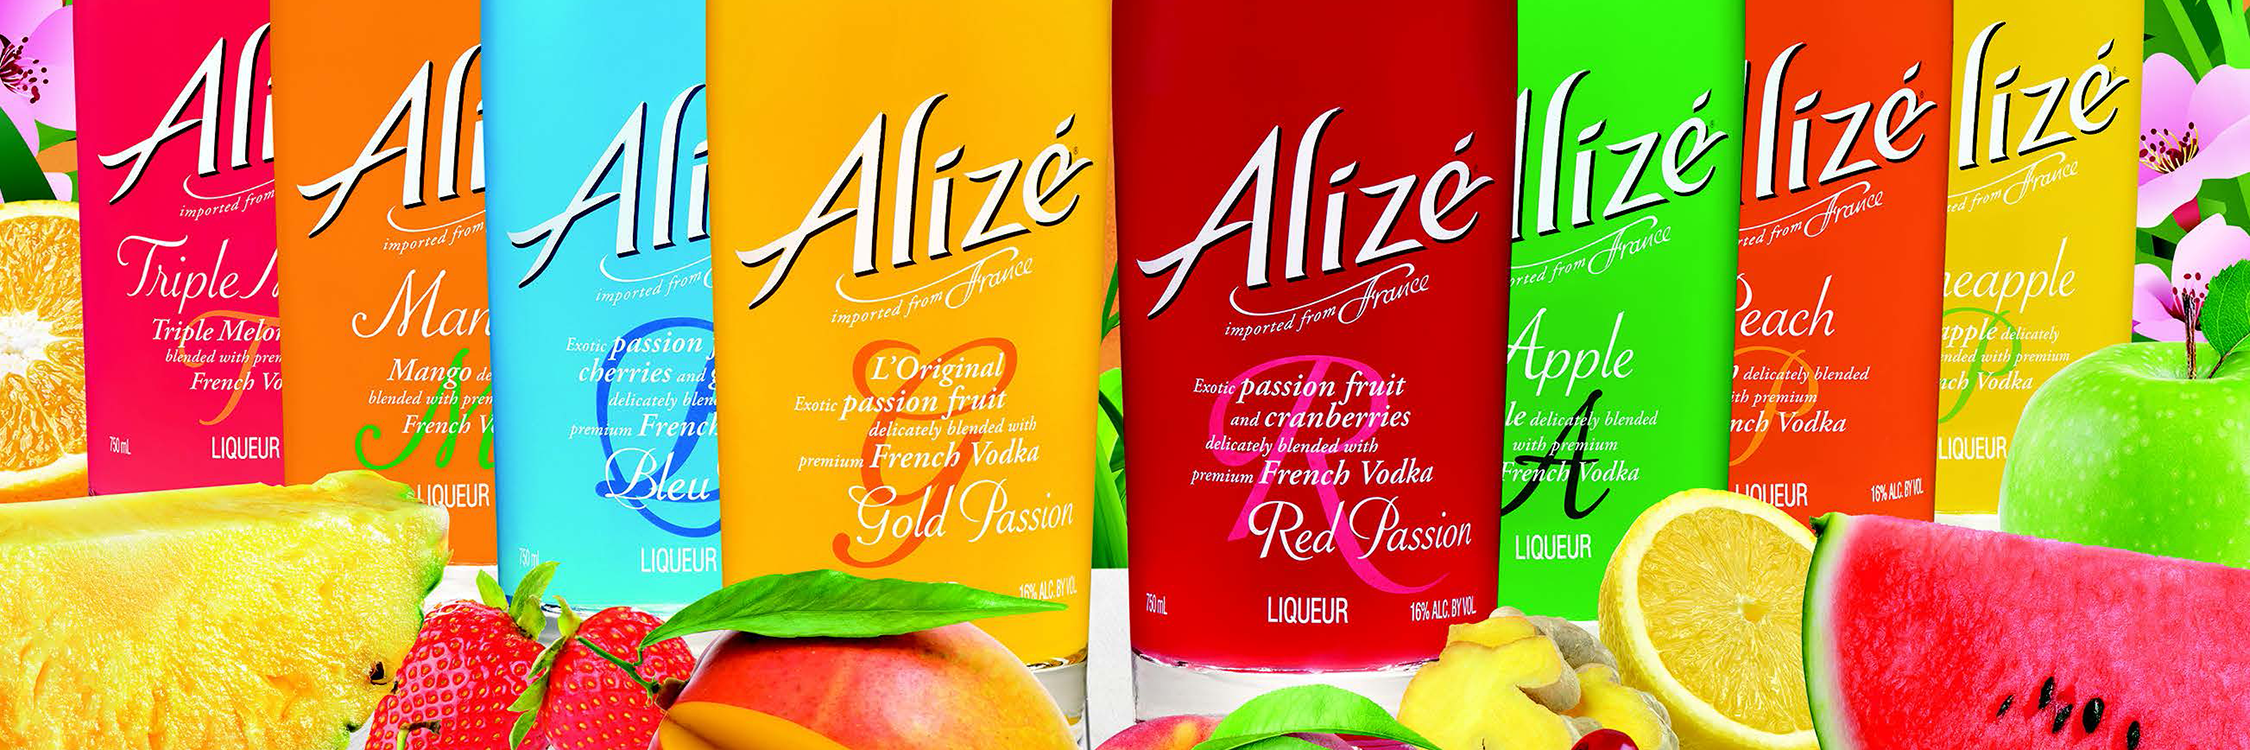 Alizé Bleu Passion Liqueur